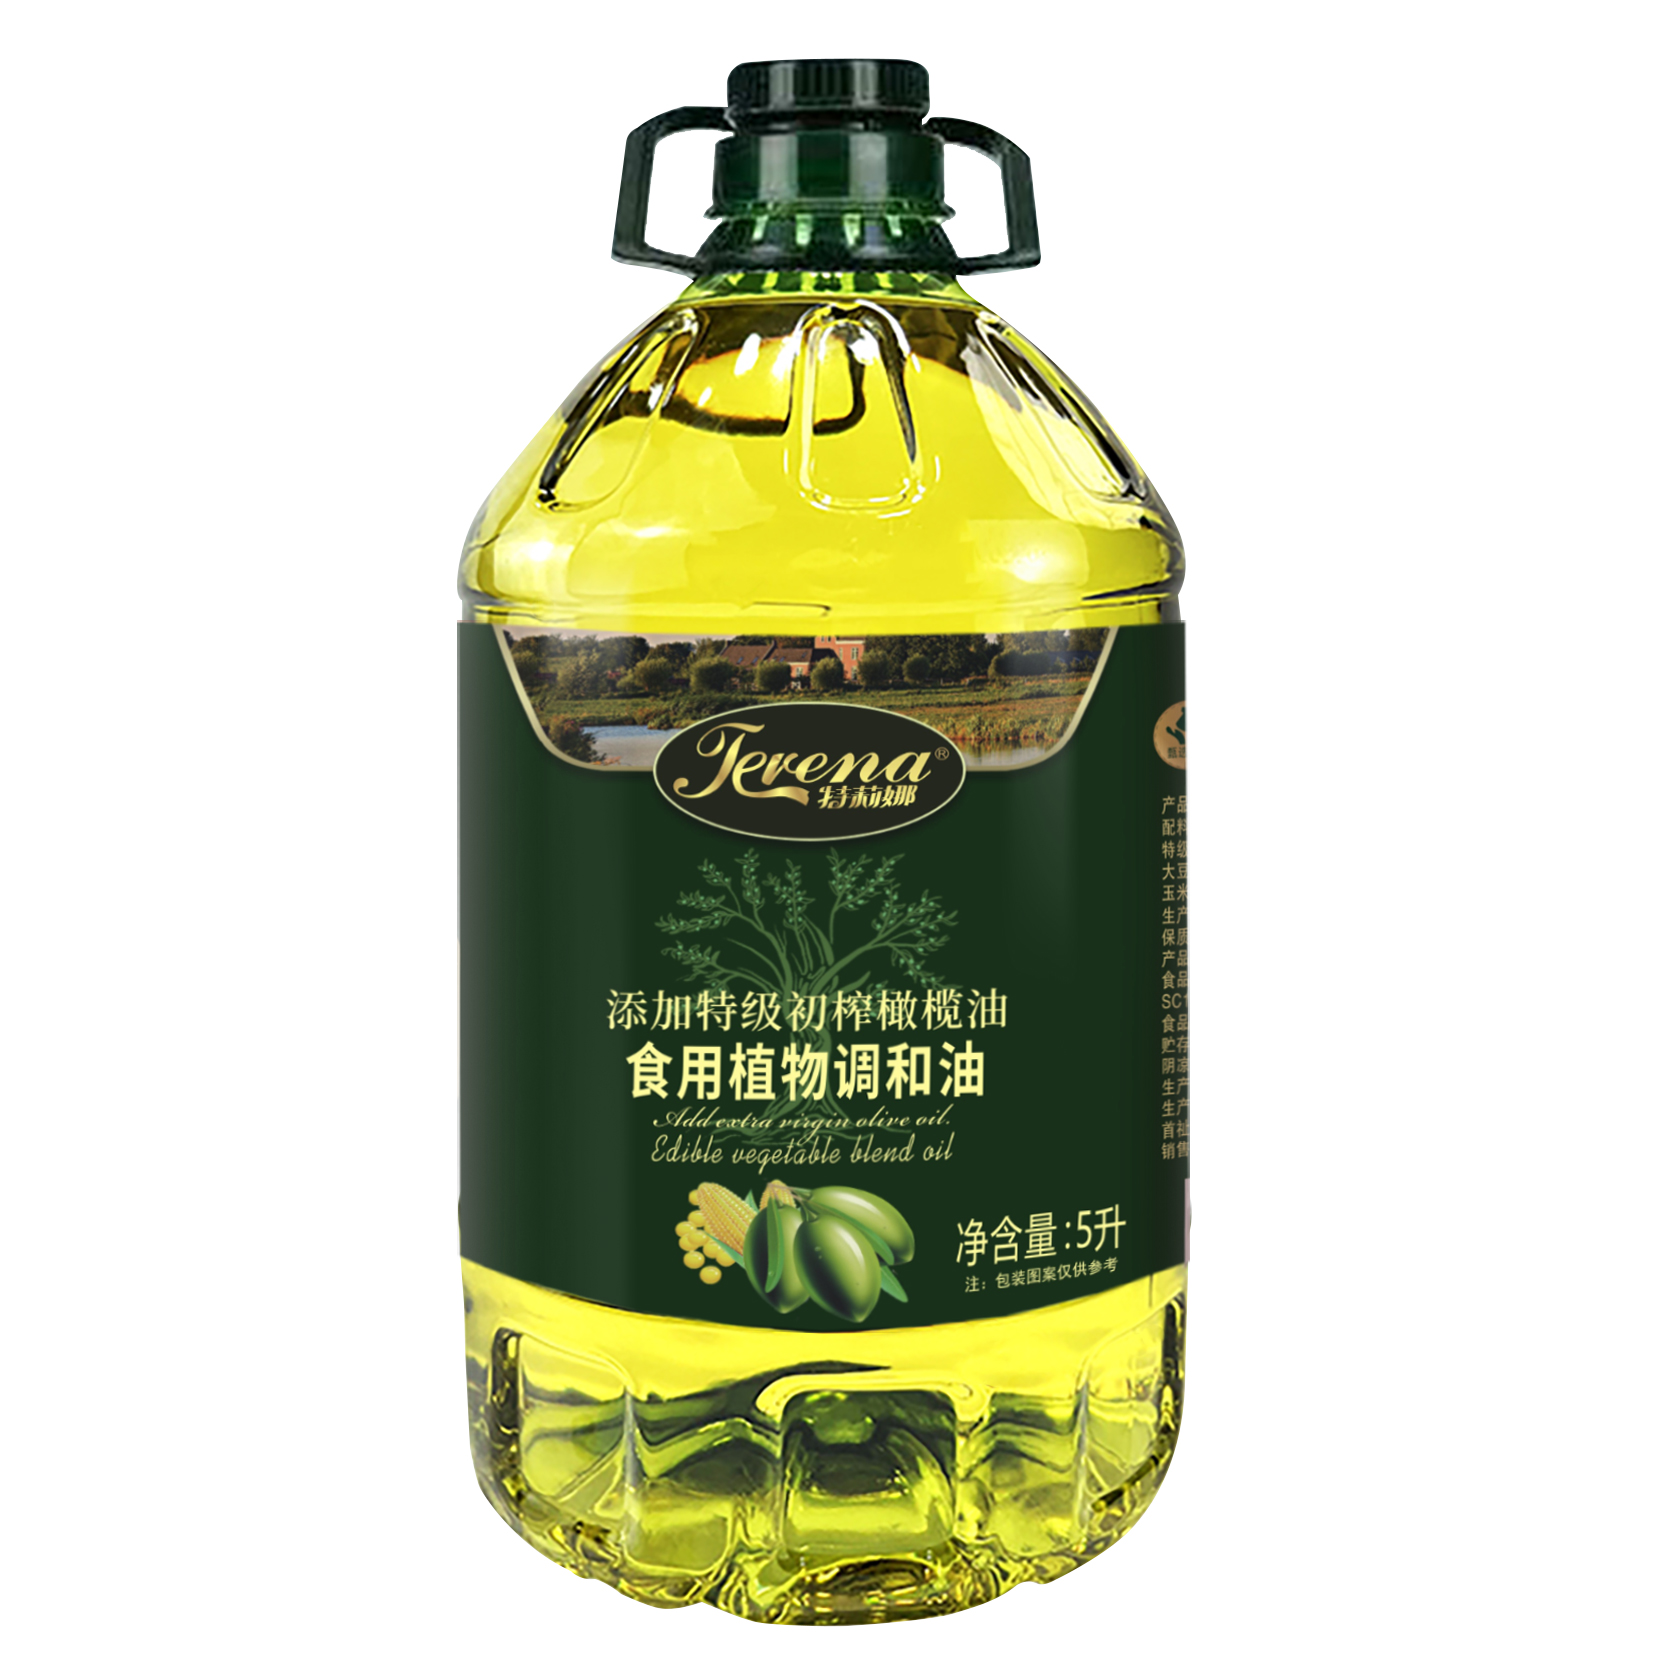 添加特级橄榄油家用橄榄调和油5升食用油初榨橄榄油约10斤特价-图3